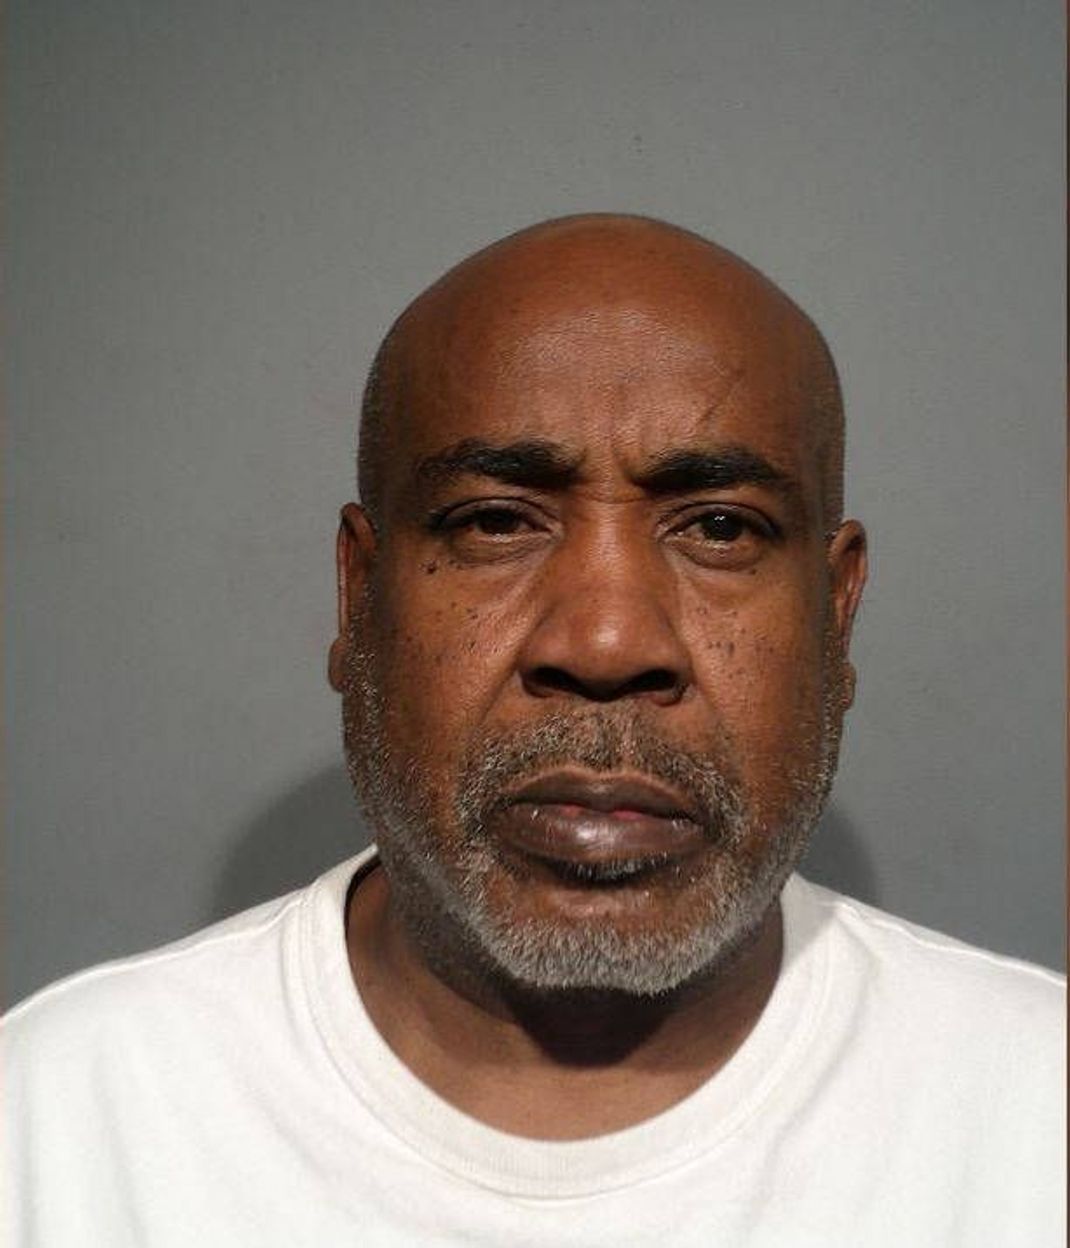 Der frühere Bandenchef Duane "Keffe D" Davis (60) sitzt in Las Vegas in Haft. Es besteht der Verdacht, dass für den Mord von Tupac verantwortlich sei